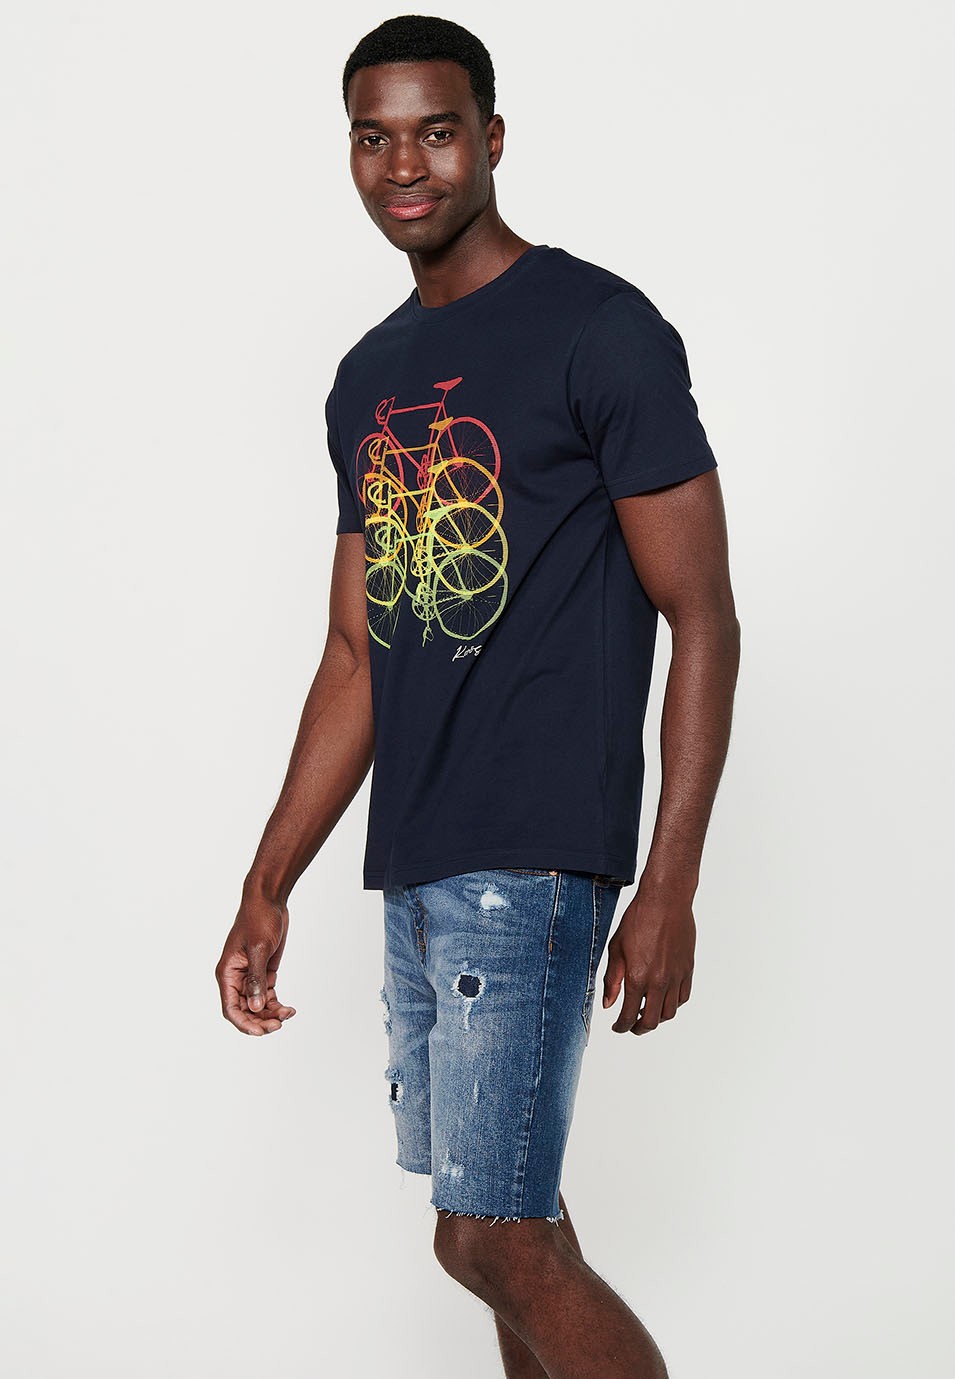 T-shirt en coton à manches courtes avec imprimé vélo sur le devant, coloris marine pour homme 3